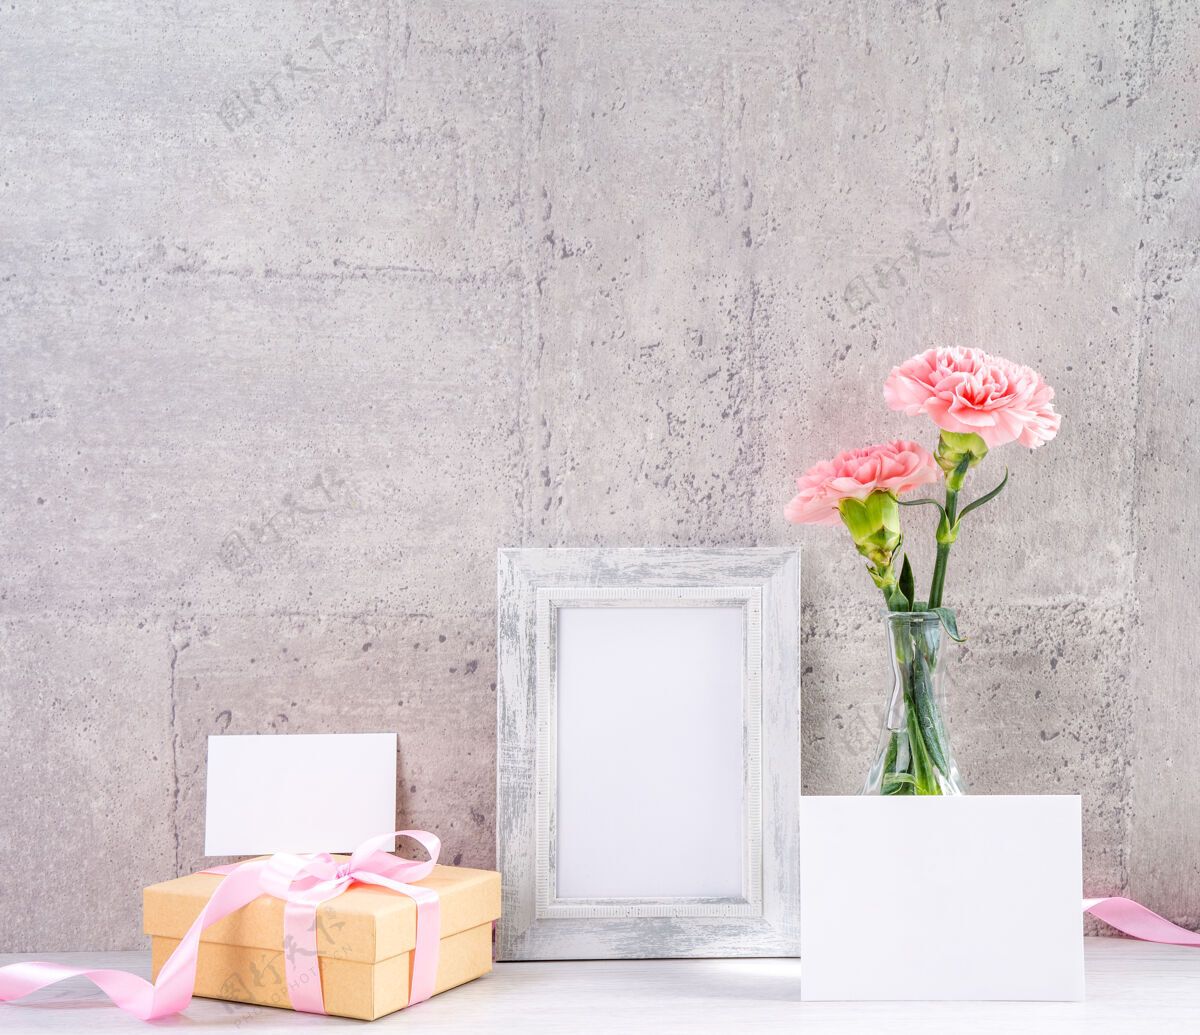 明亮粉红色康乃馨的特写镜头放在一个花瓶里 配上相框 表示母亲节的问候排列物品日子